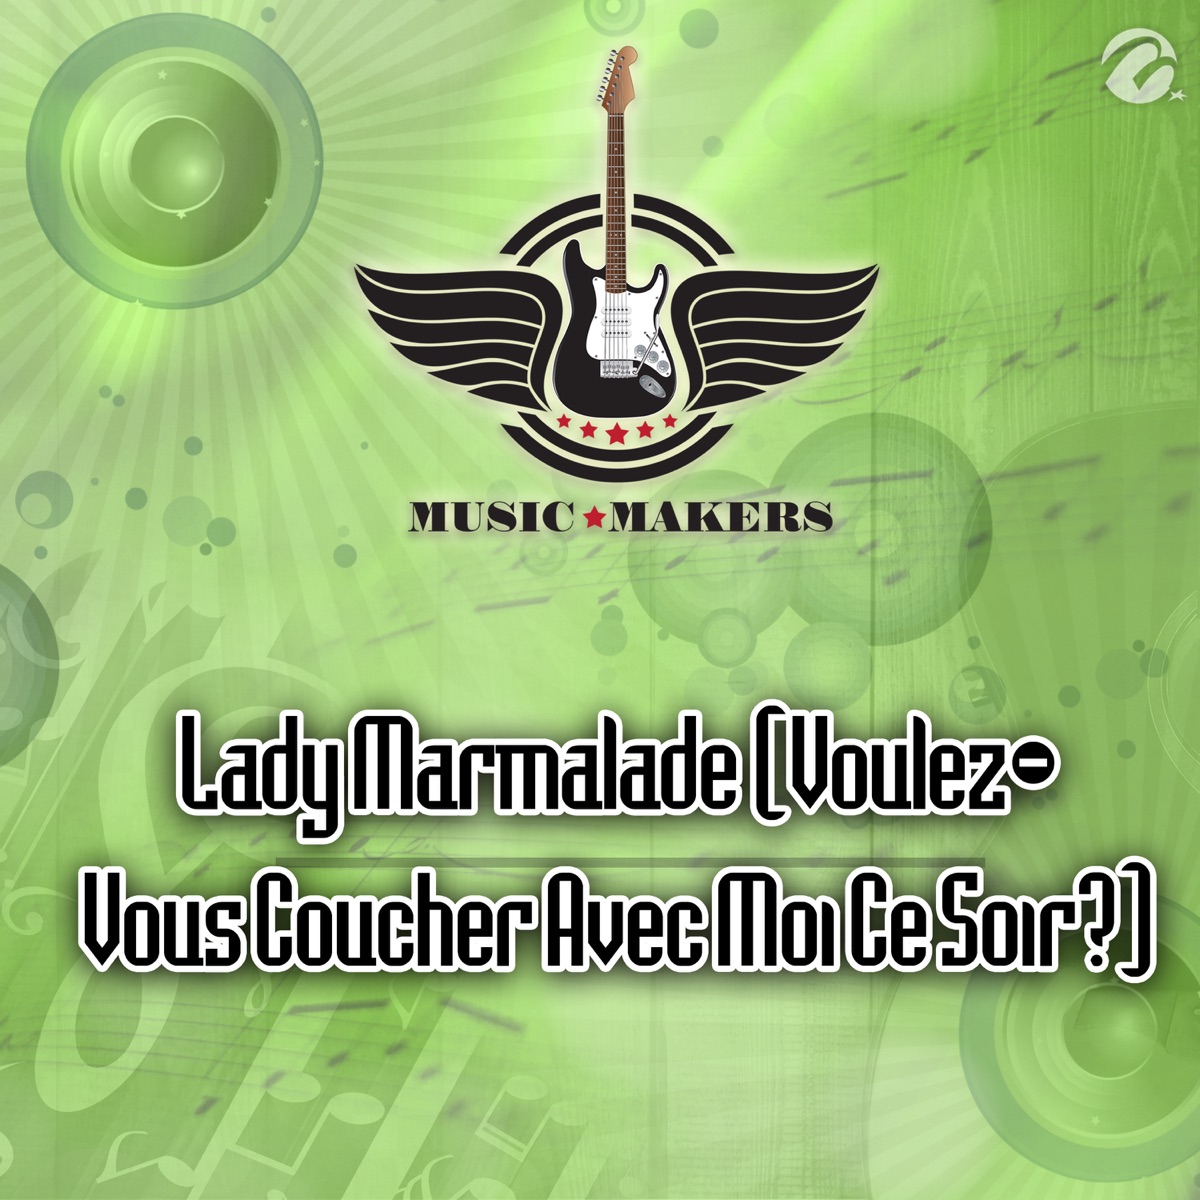 Lady Marmalade (Voulez-Vous Coucher Avec Moi Ce Soir?) - Single - Album by  Music Makers - Apple Music